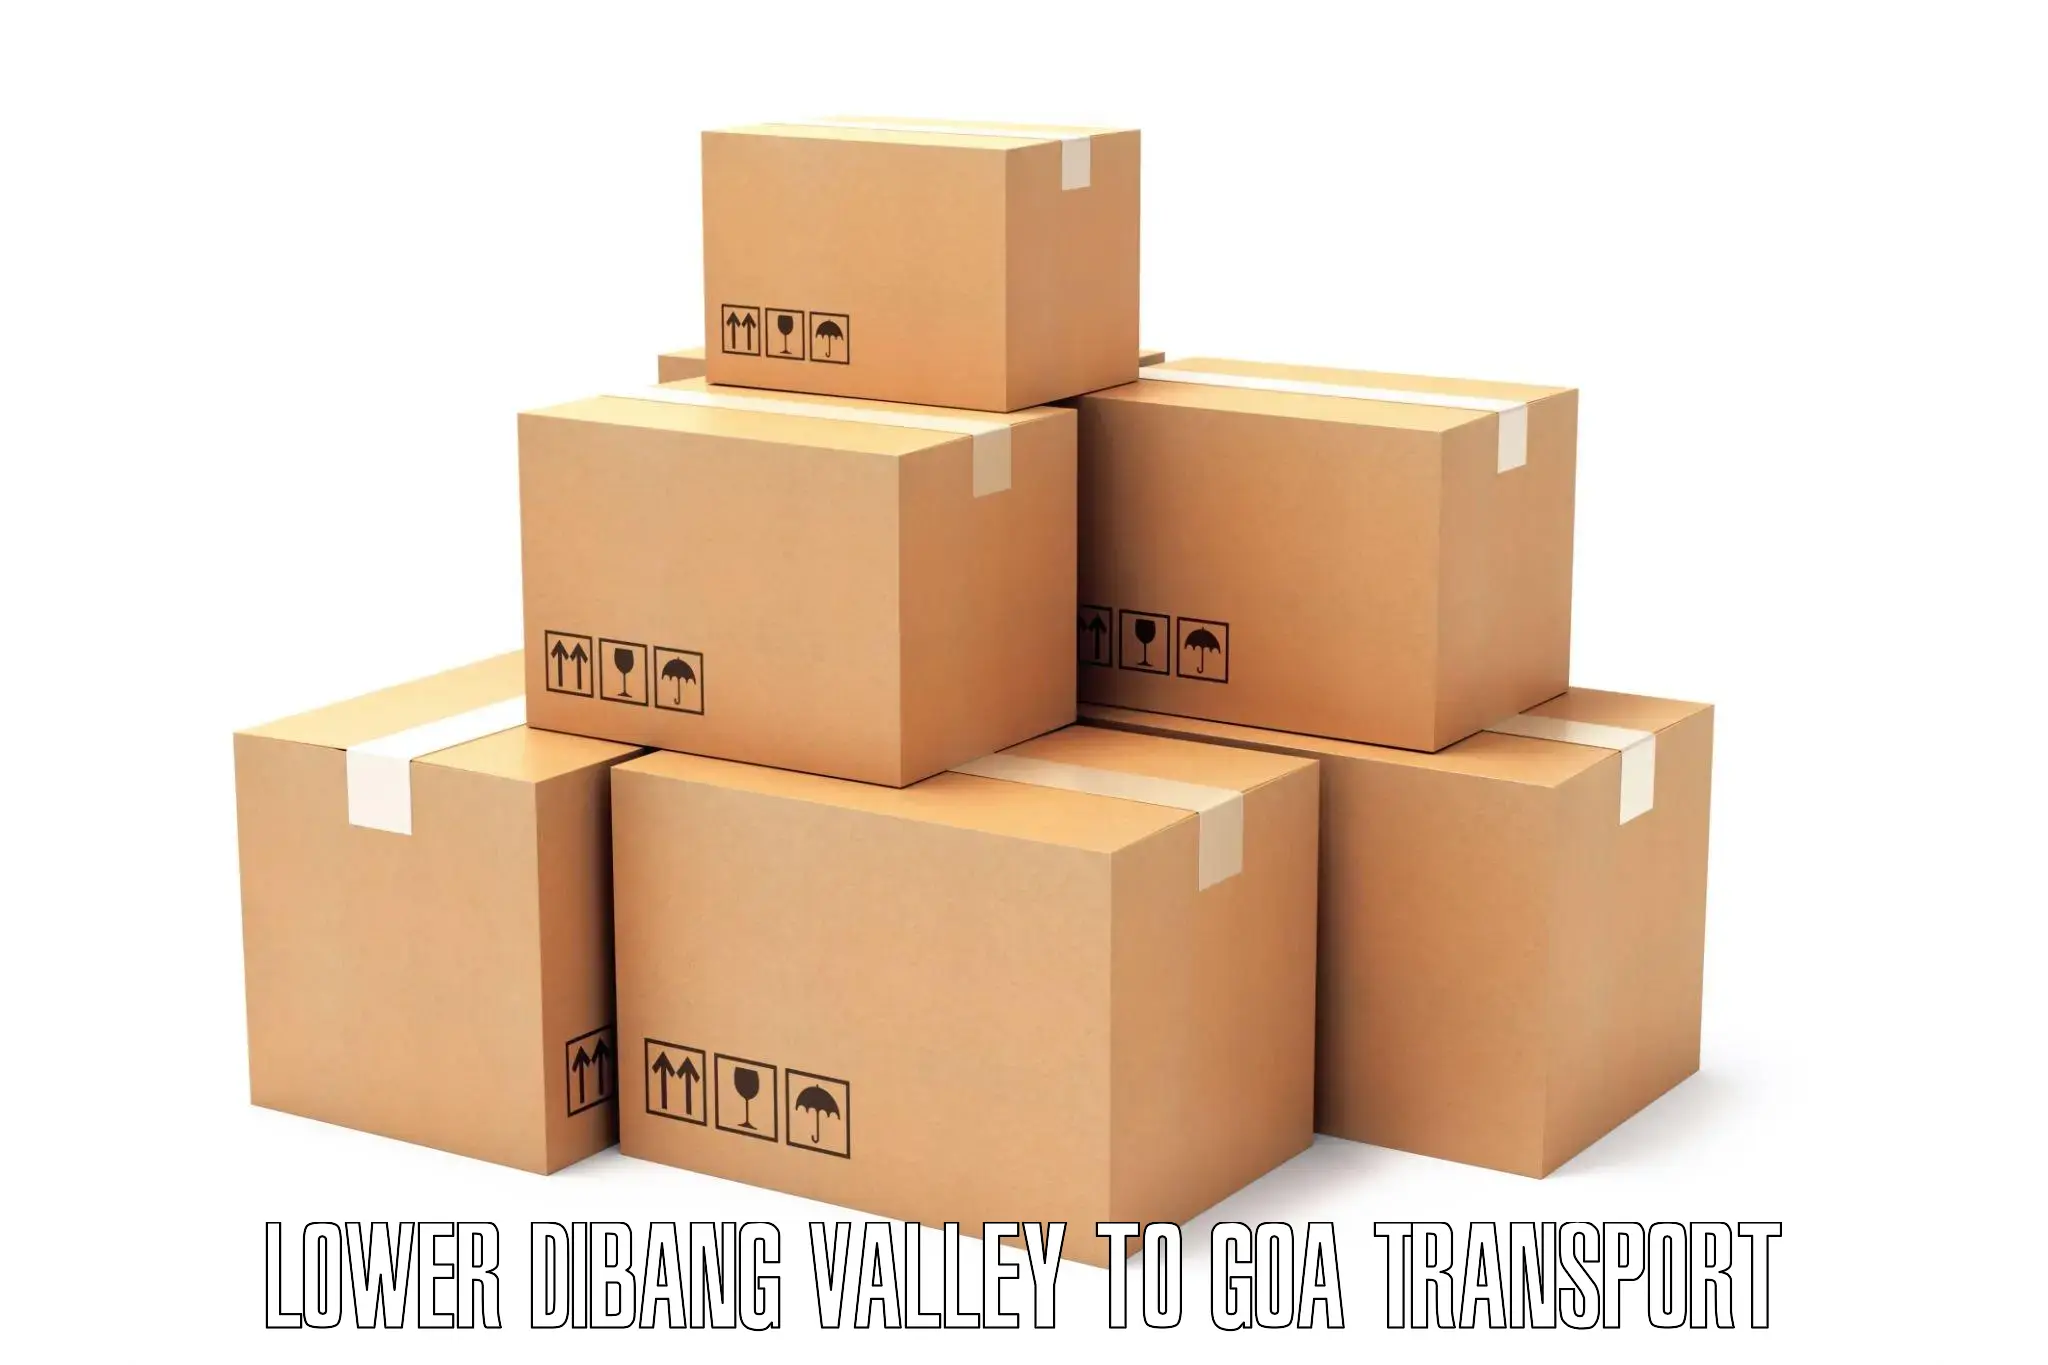 Furniture transport service Lower Dibang Valley to Sanvordem